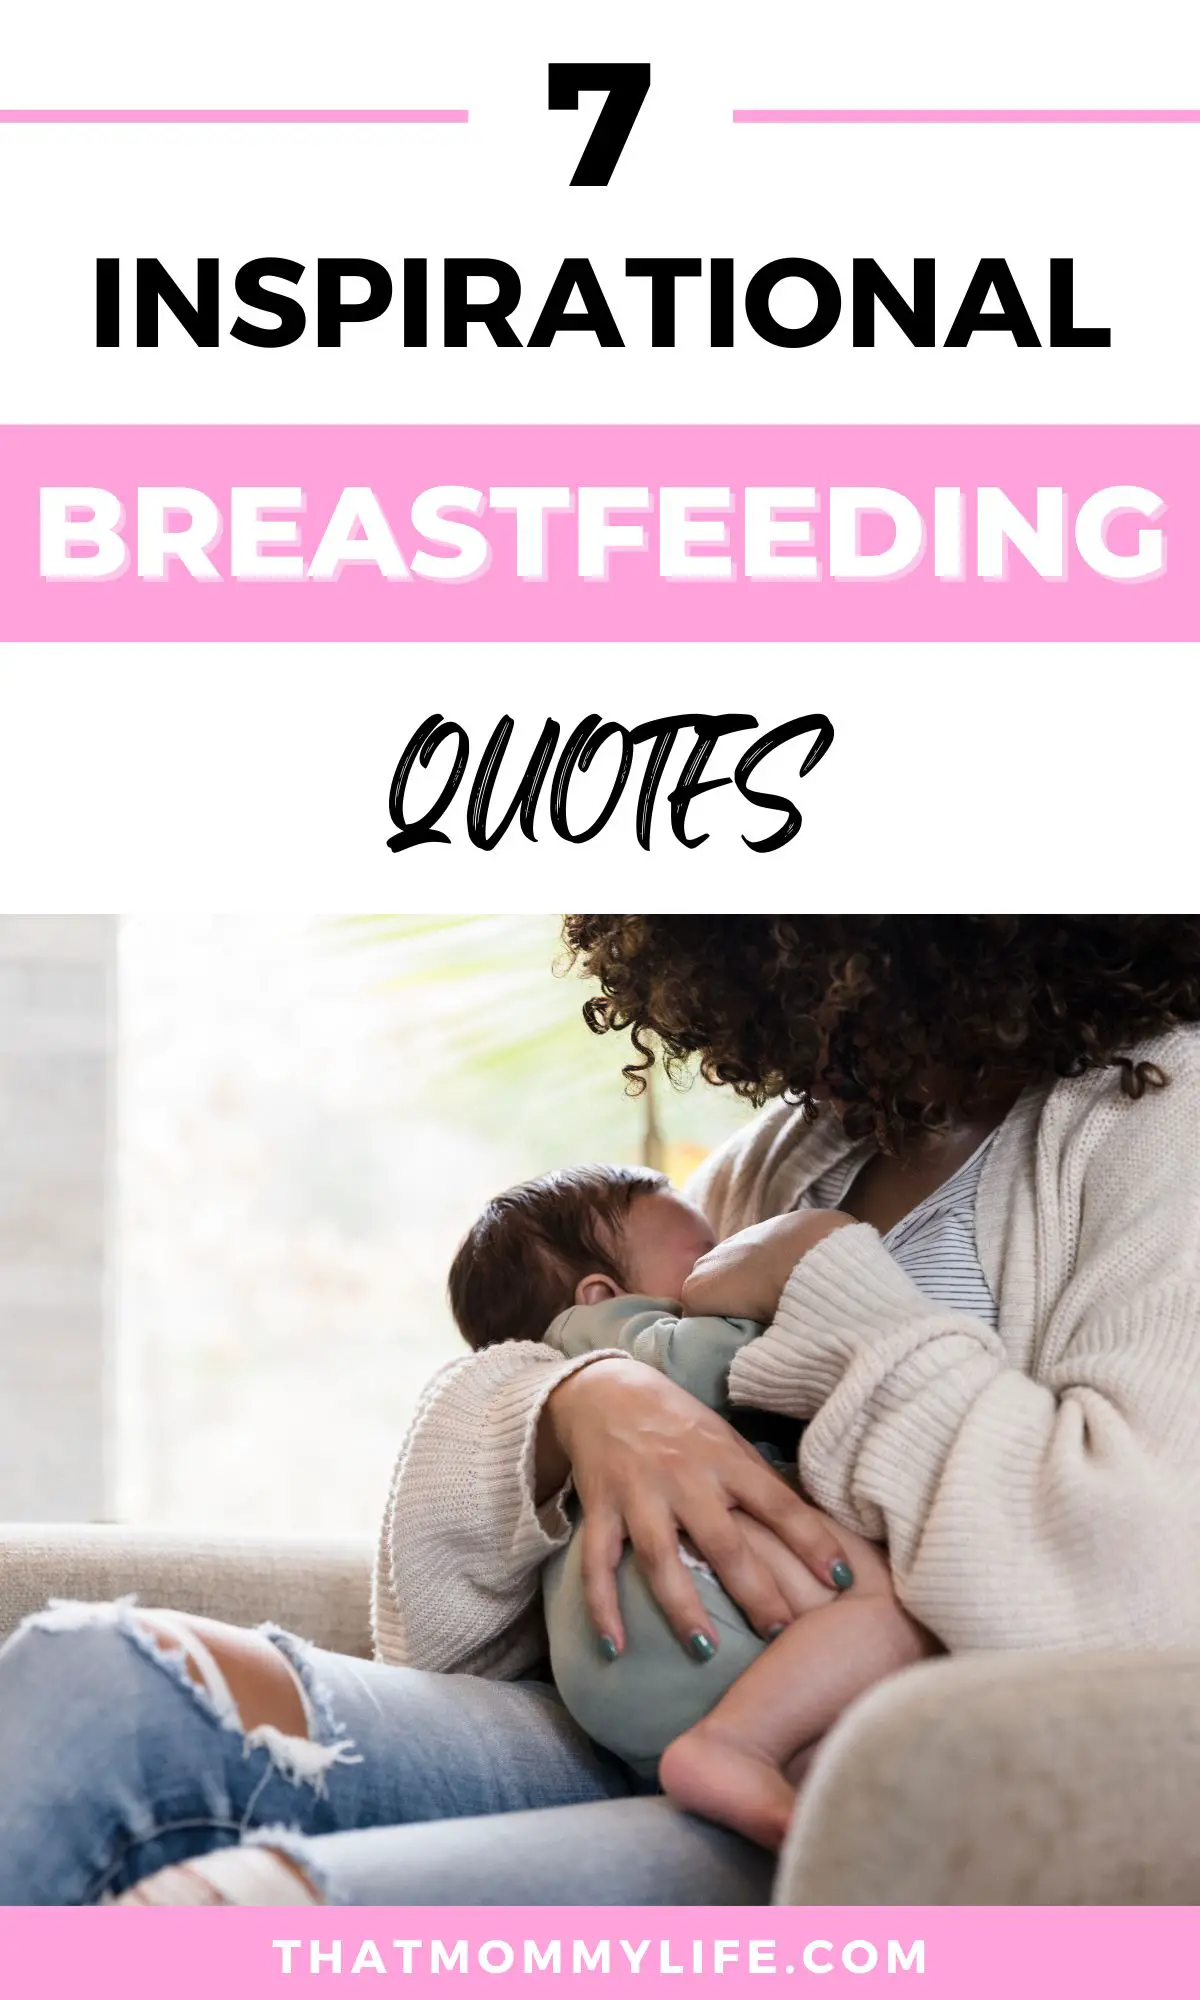 breastfeeding quotes